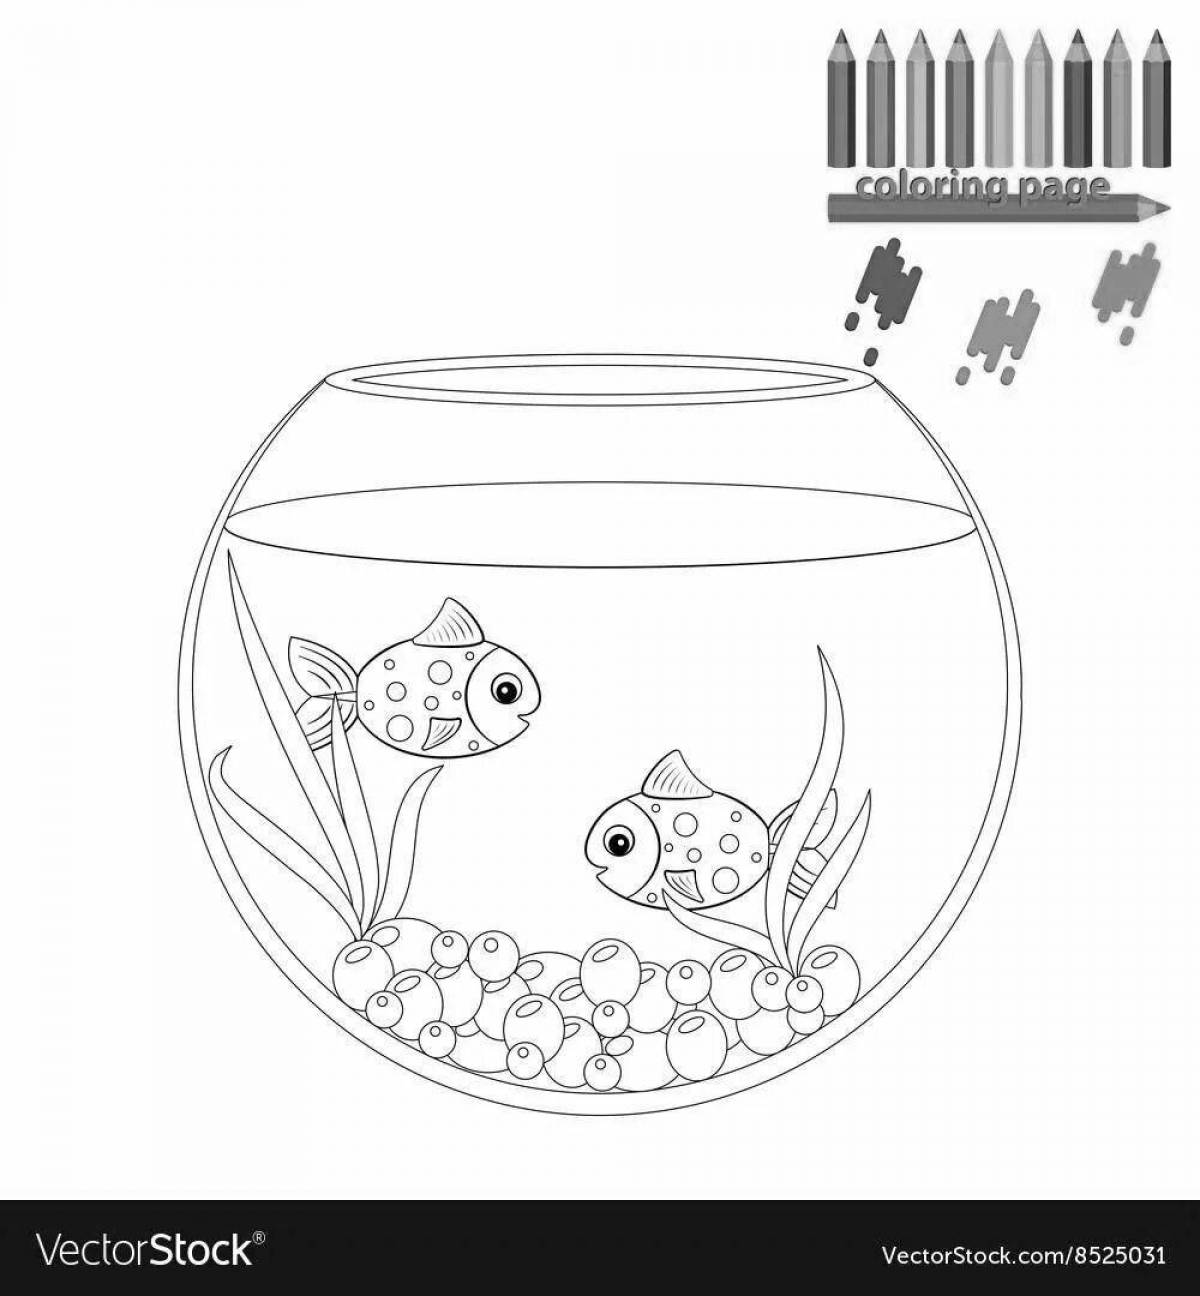 Aquarium fun round coloring page